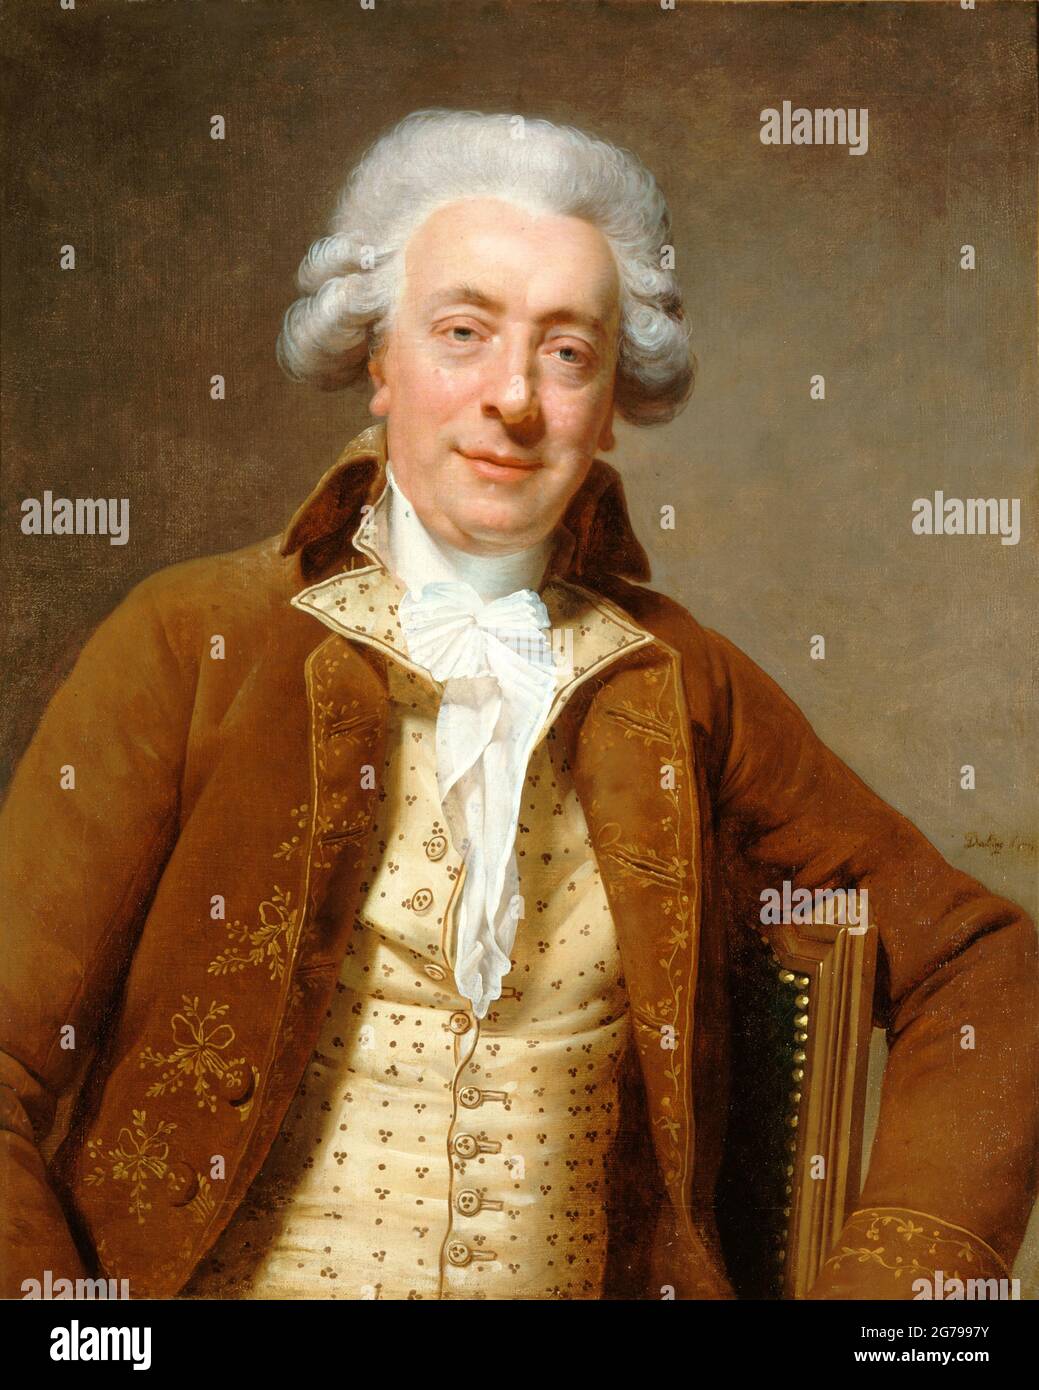 Portrait of the Architect Claude-Nicolas Ledoux (1736-1806). Museum: Musée Carnavalet, Paris. Author: MARTIN DROLLING. Stock Photo